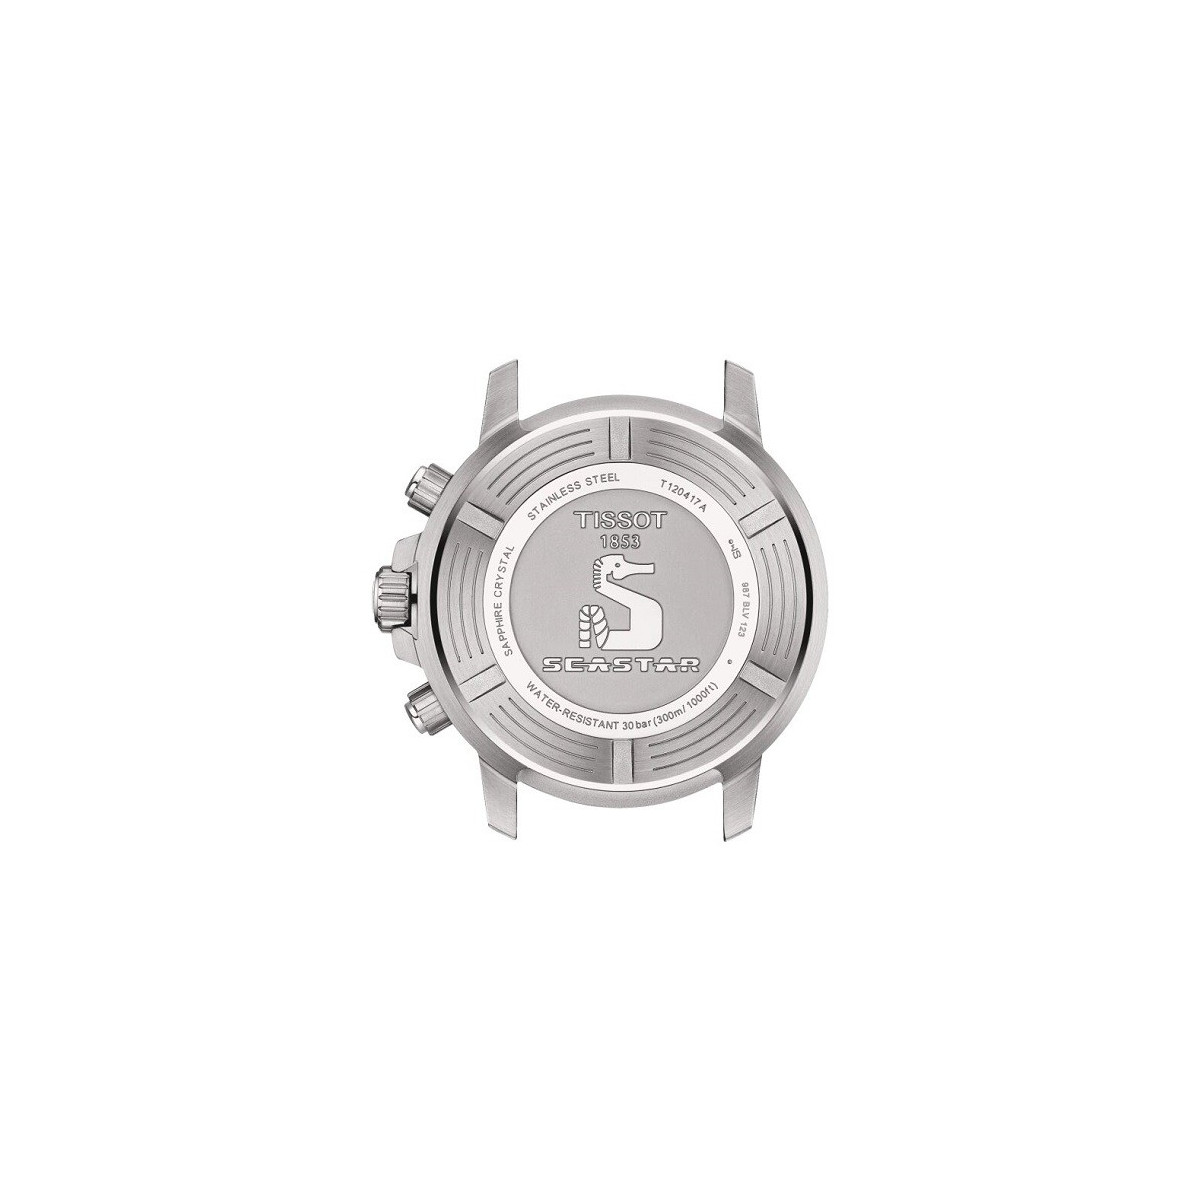 Reloj Tissot Seastar 1000 Quartz Chronograph para caballero